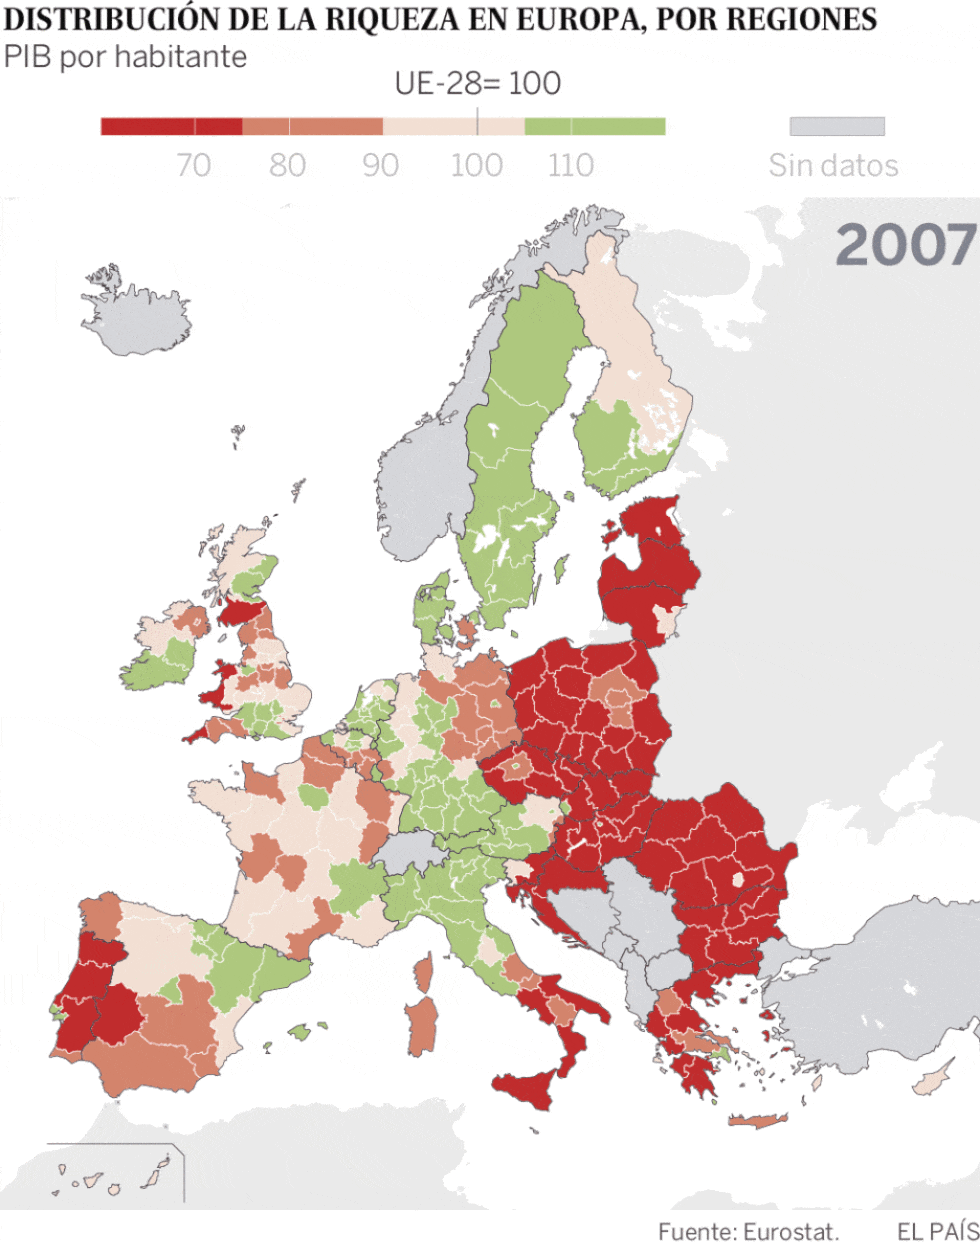 Unión Europea: Evolución y conflictos [mapa, infografía] - Página 8 15704710